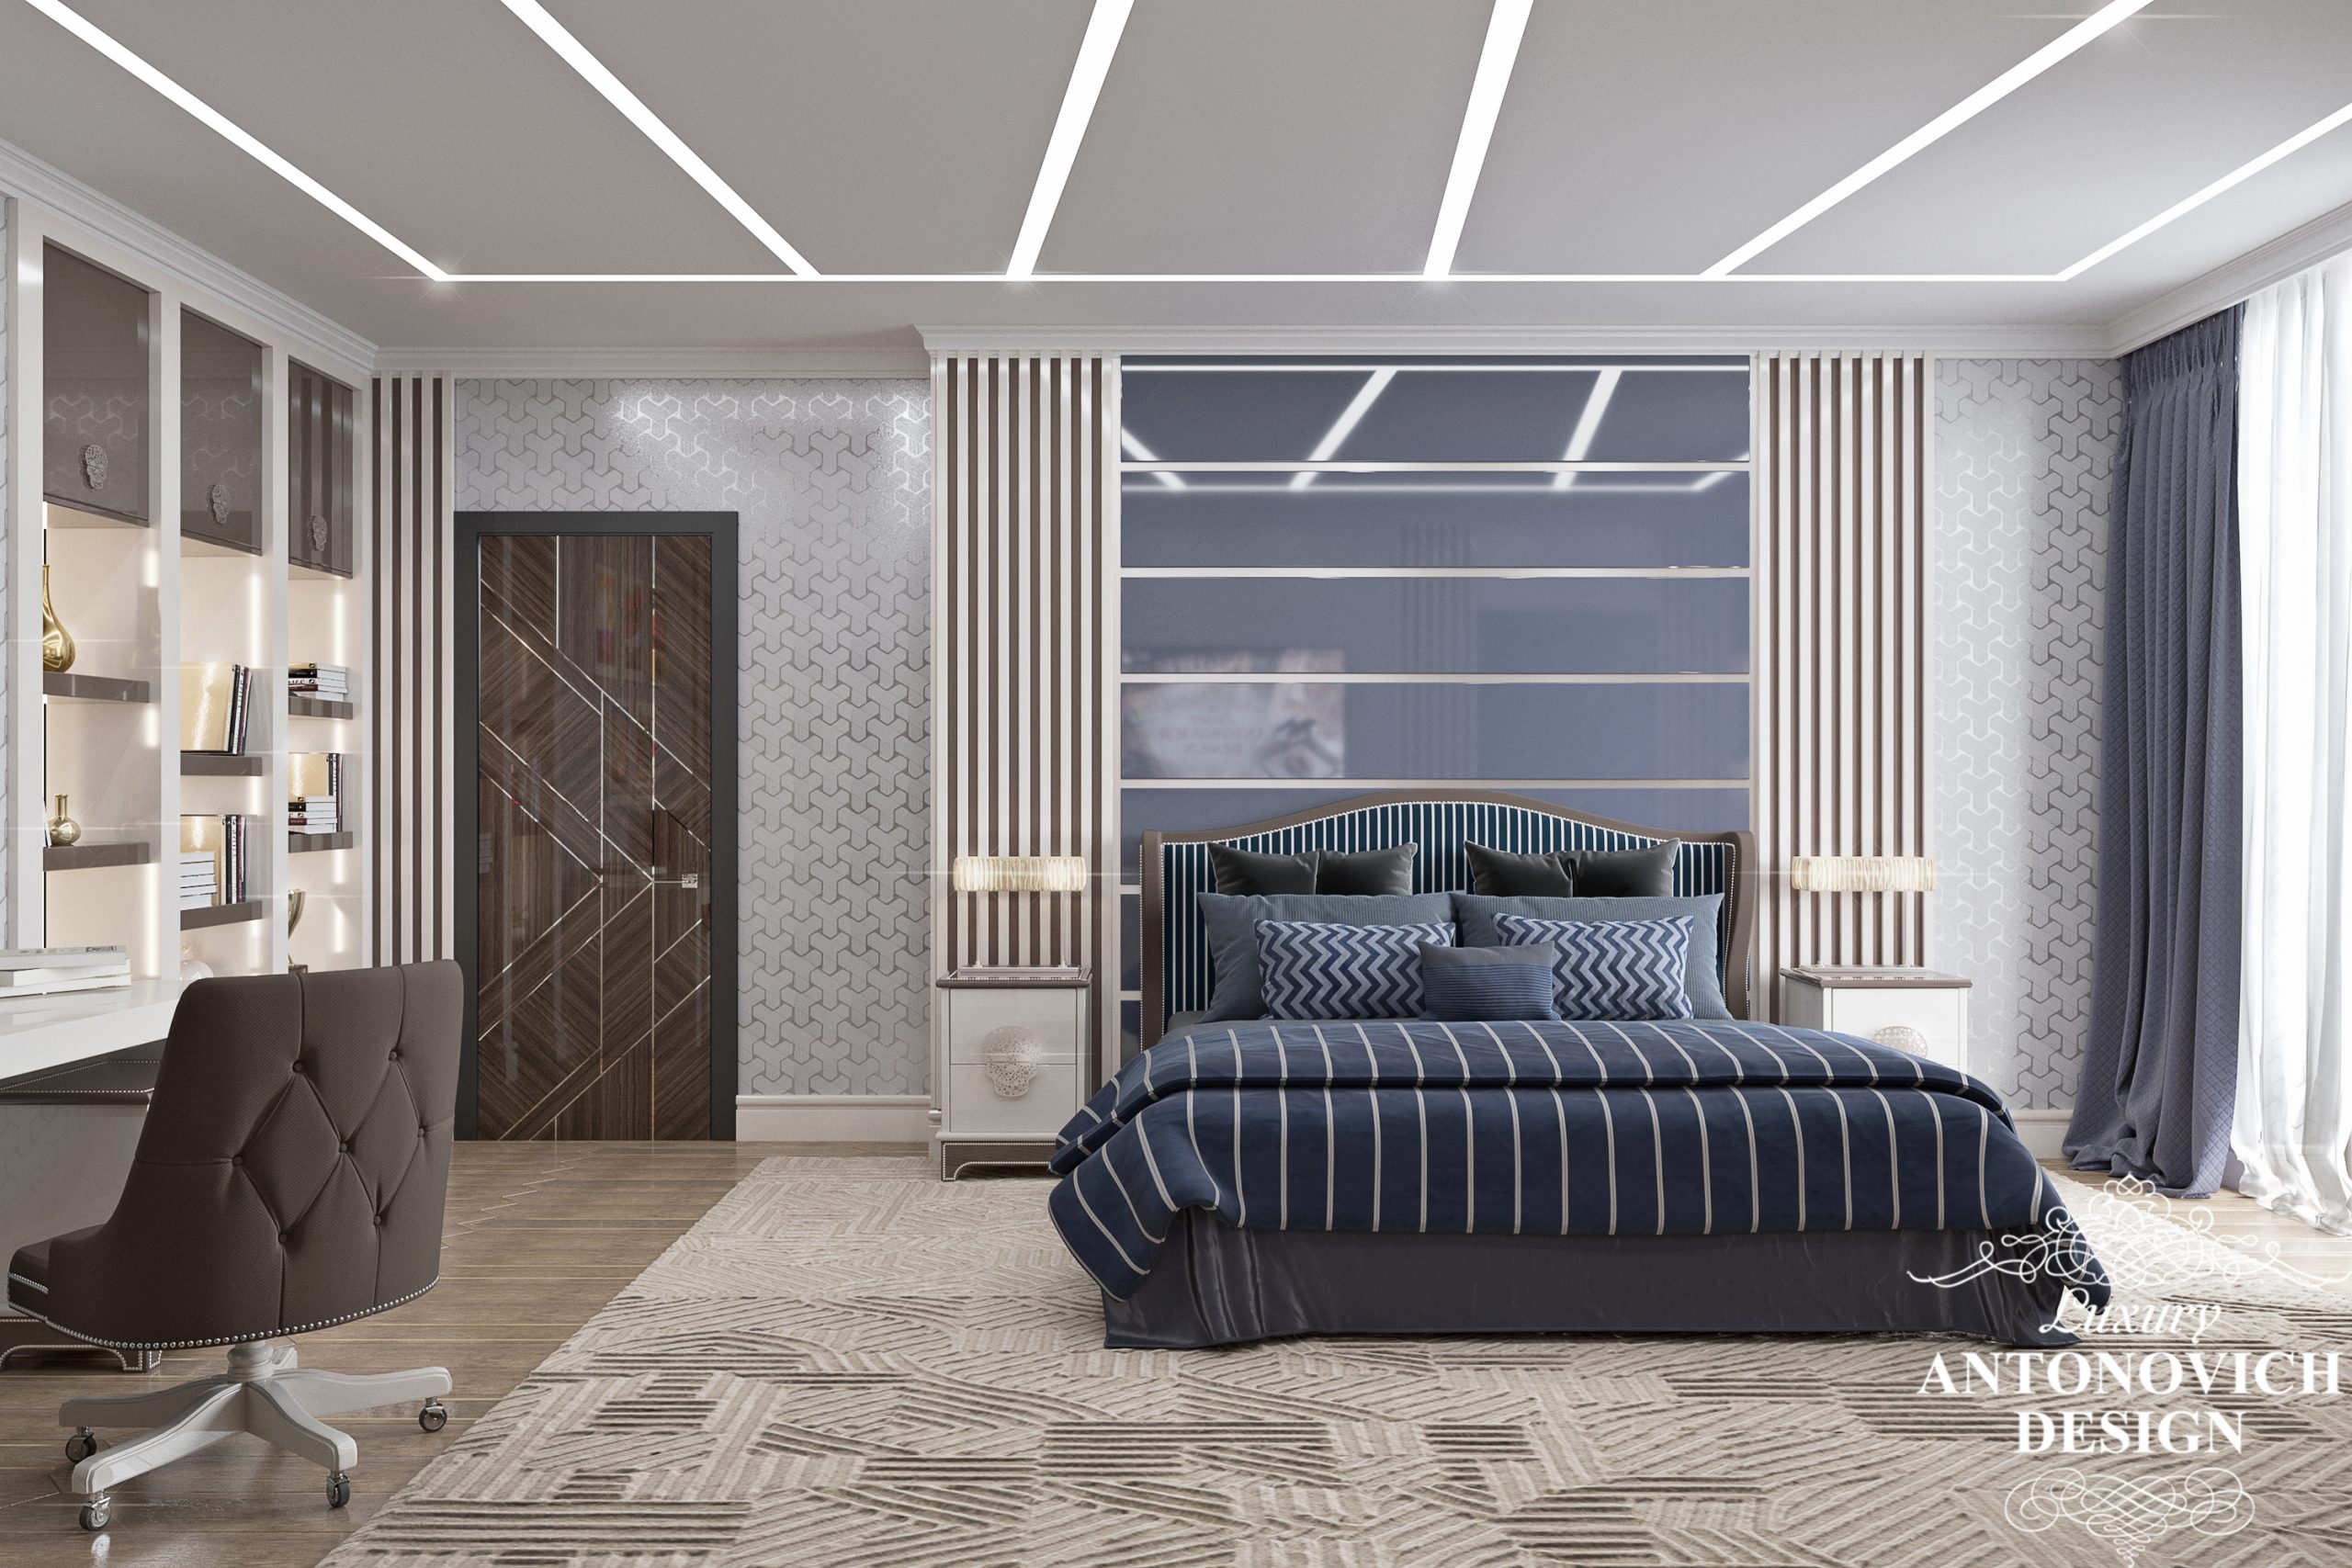 Современная функциональная подсветка в дизайне спальни